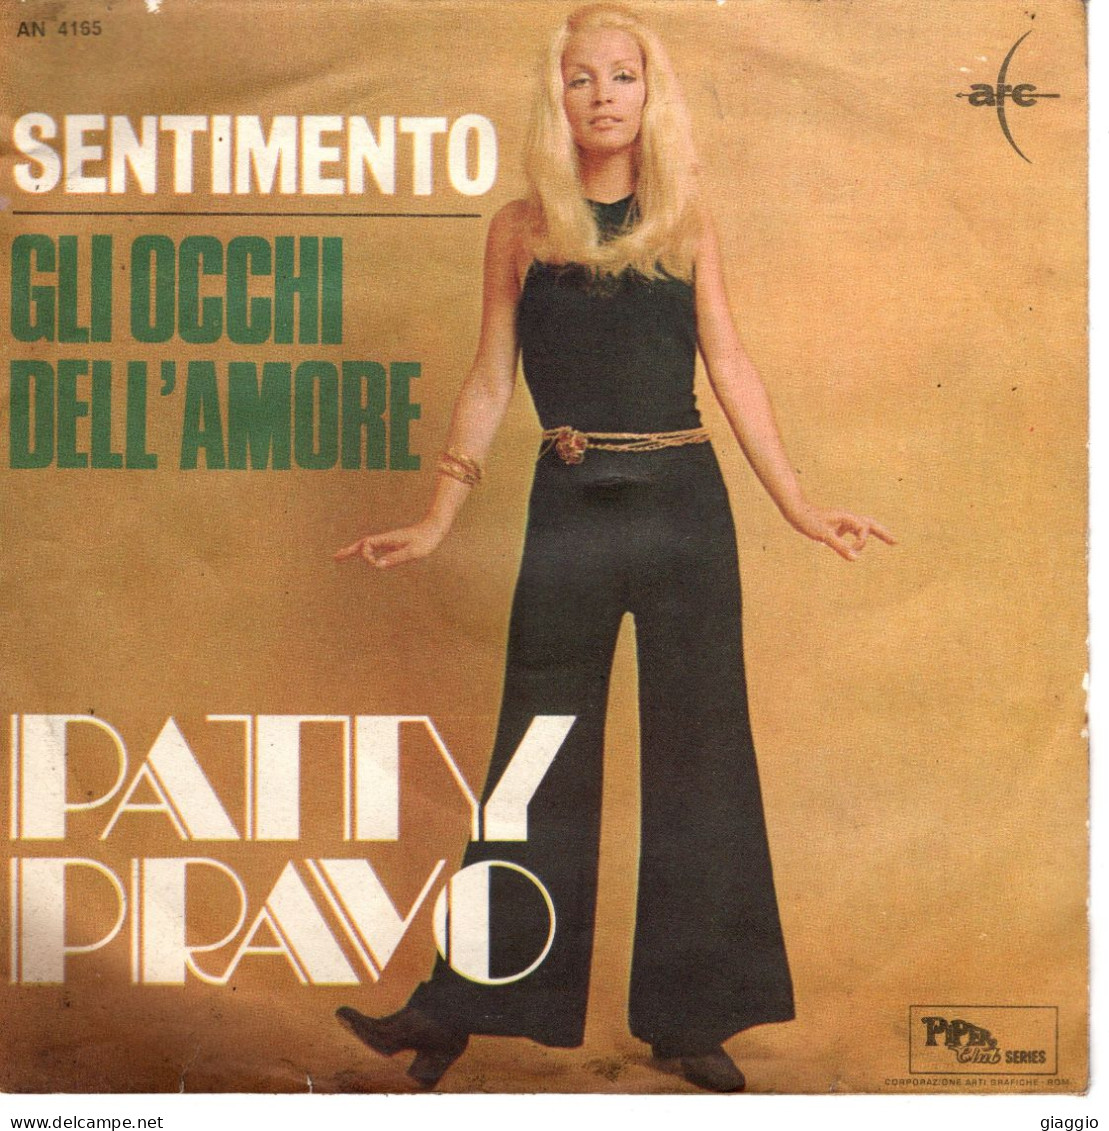 °°° 524) 45 GIRI - PATTY PRAVO - GLI OCCHI DELL'AMORE / SENTIMENTO °°° - Otros - Canción Italiana